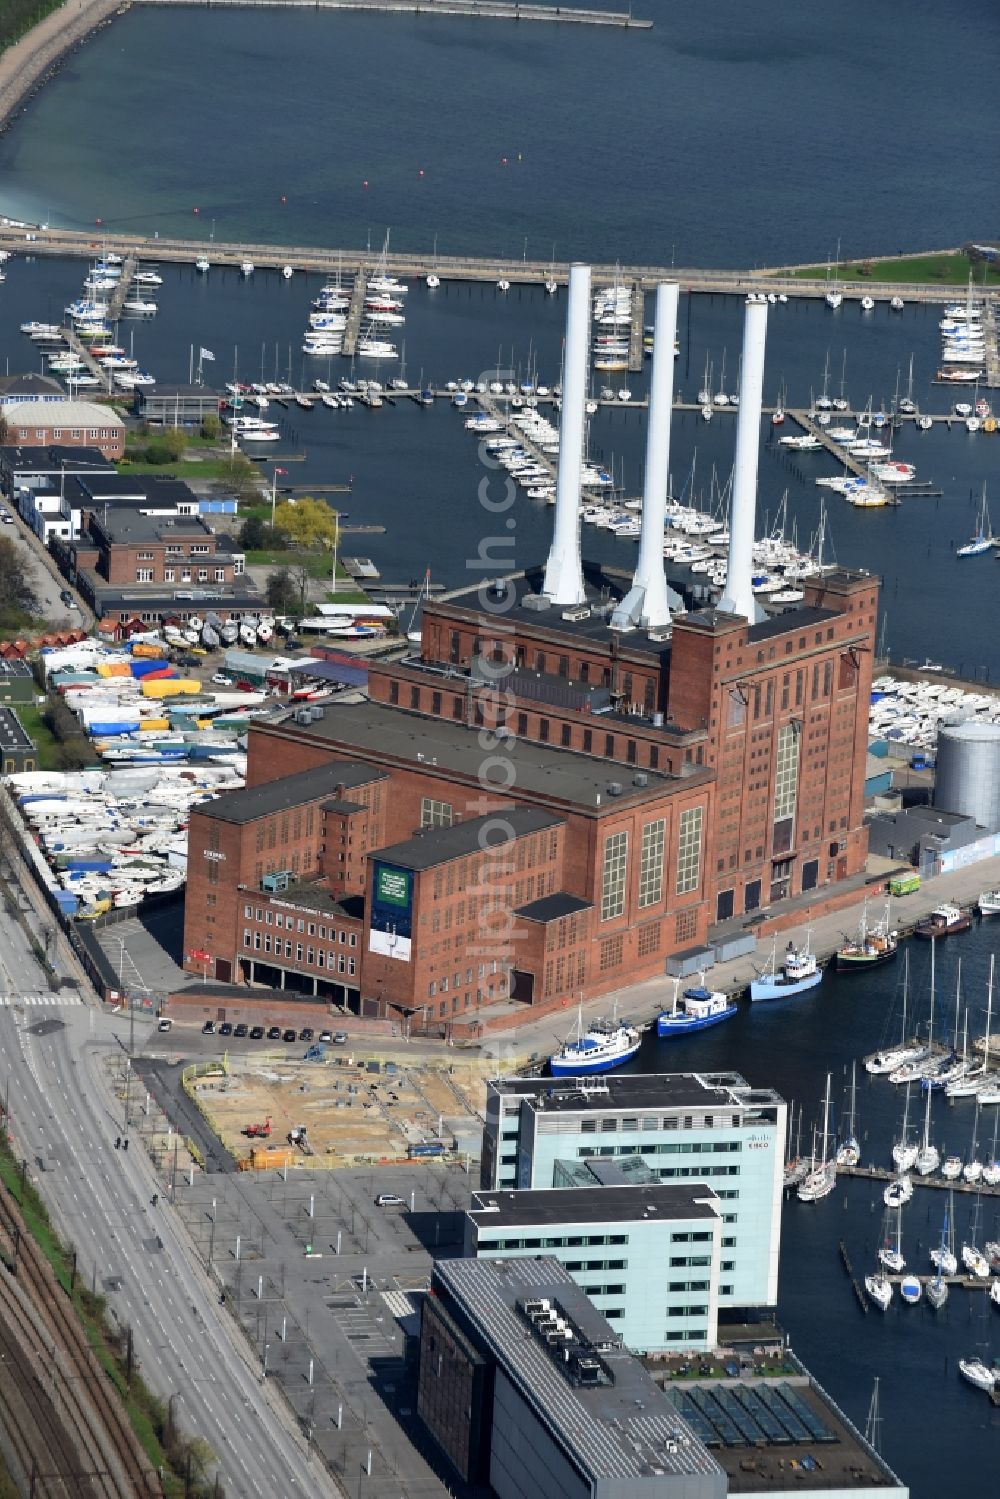 Aerial photograph Kopenhagen - Power plants and exhaust towers of thermal power station Svanemollevaerket Lautrupsgade in Copenhagen in Region Hovedstaden, Denmark